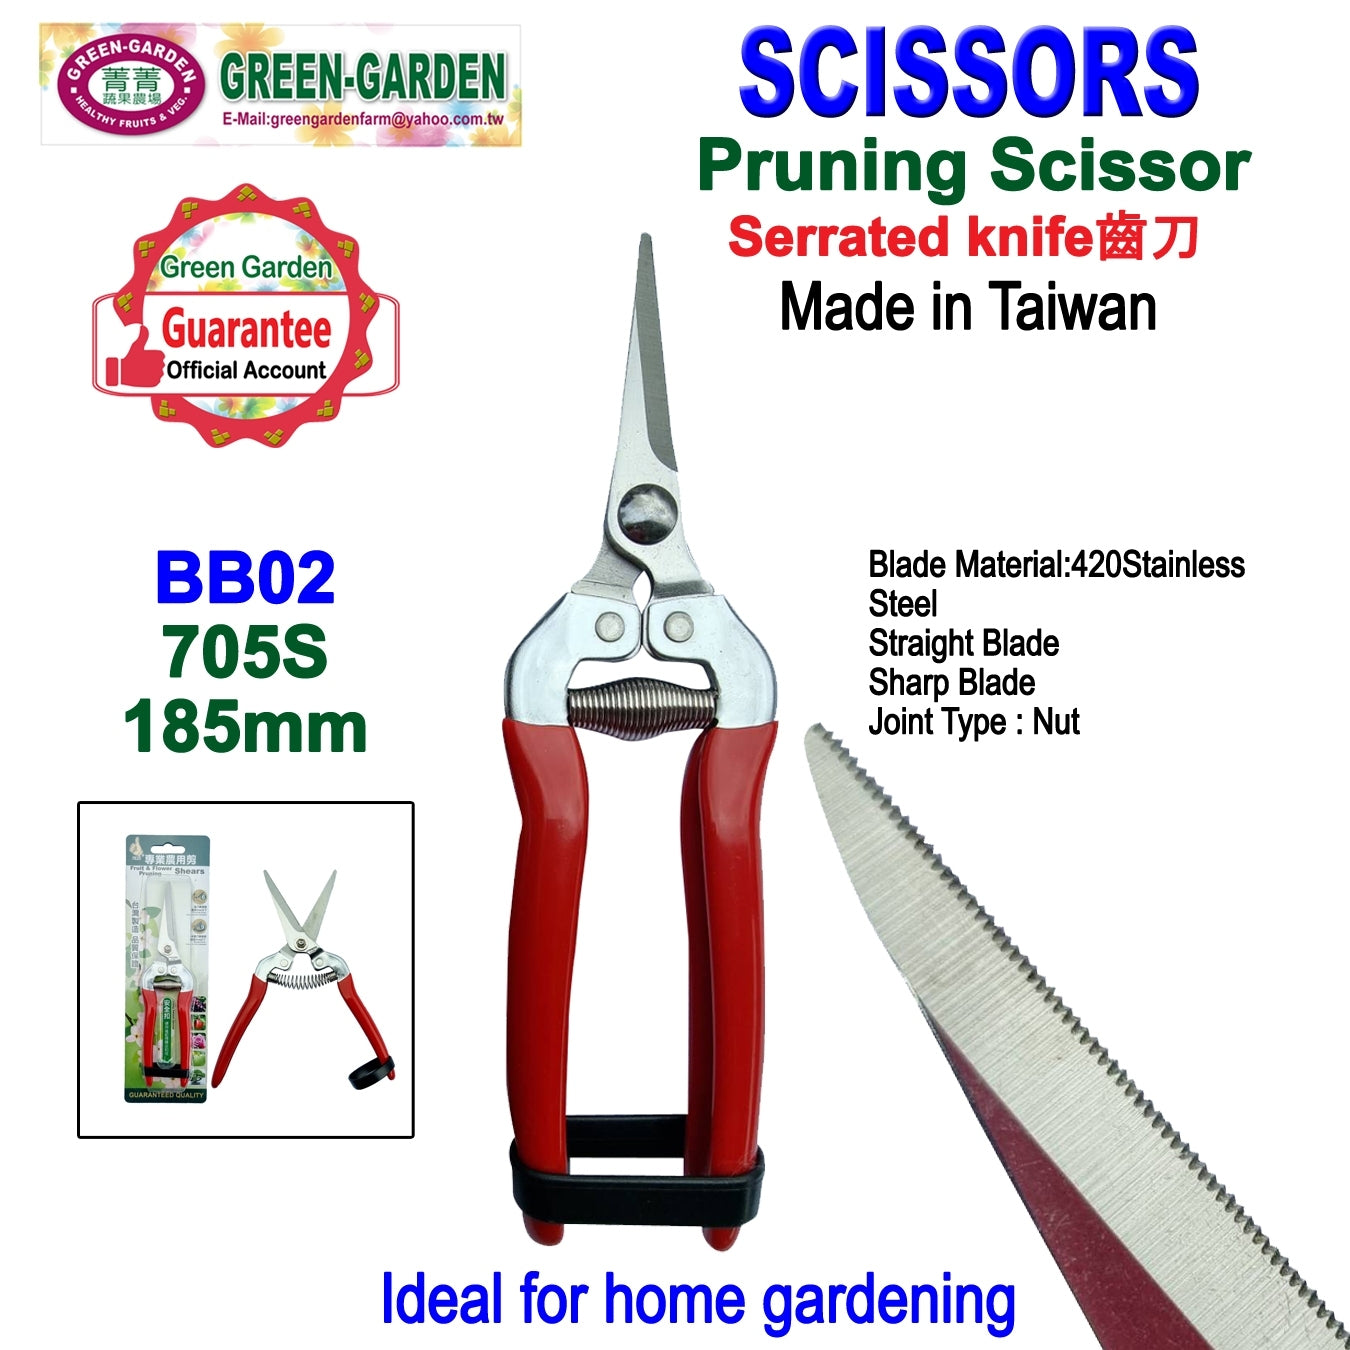 Garden Scissor (Pruning Scissor -706S- 195MM, Pruning Scissor -705S- 185MM)